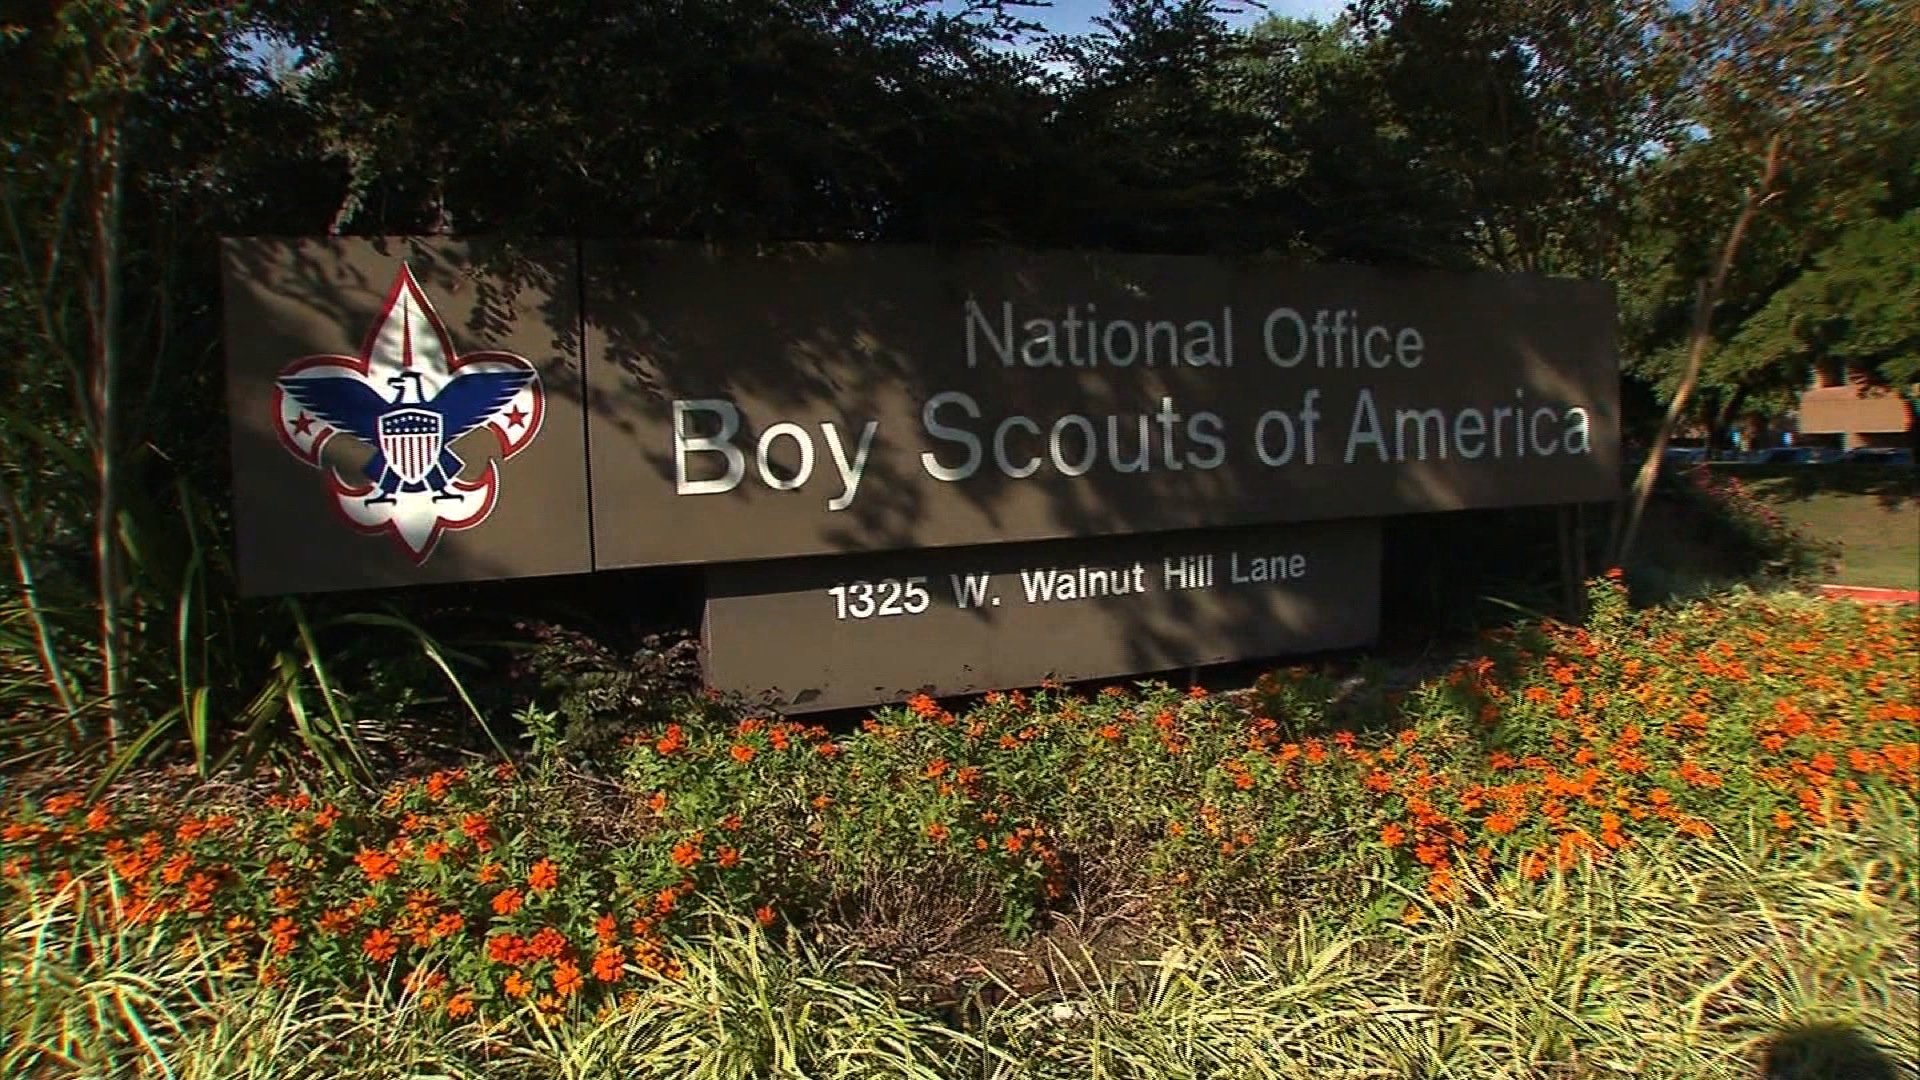 Boy Scout leaders put off vote on gay membership LGBT Weekly